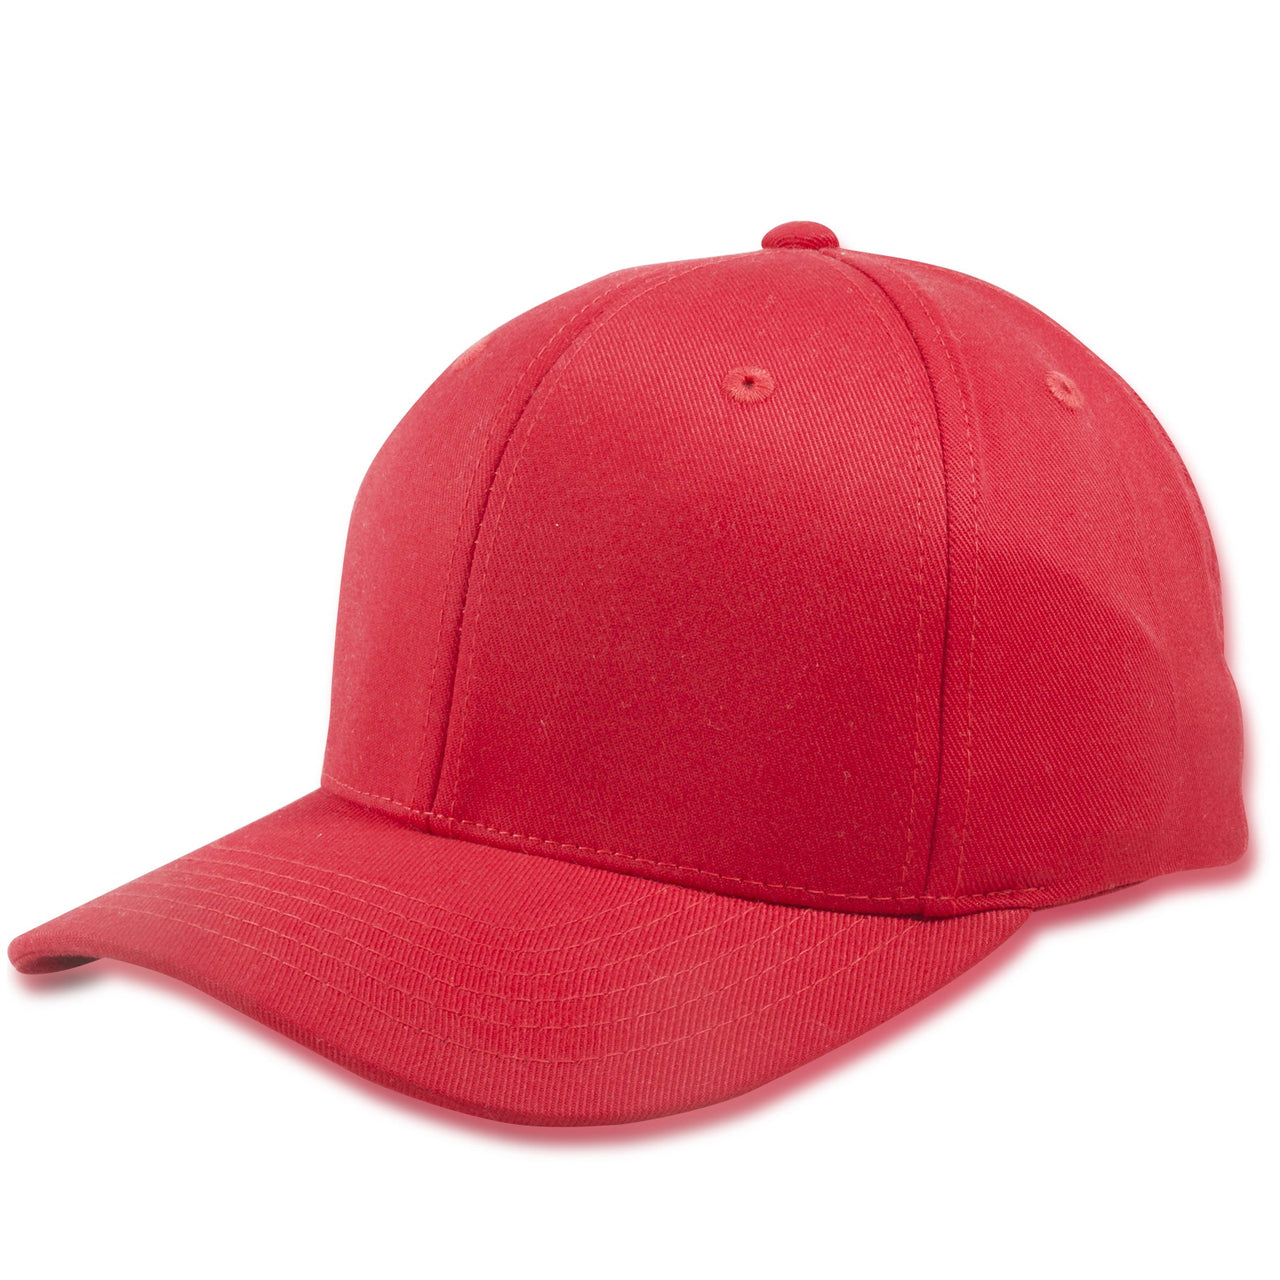 Red Blank Structured Flexfit Cap